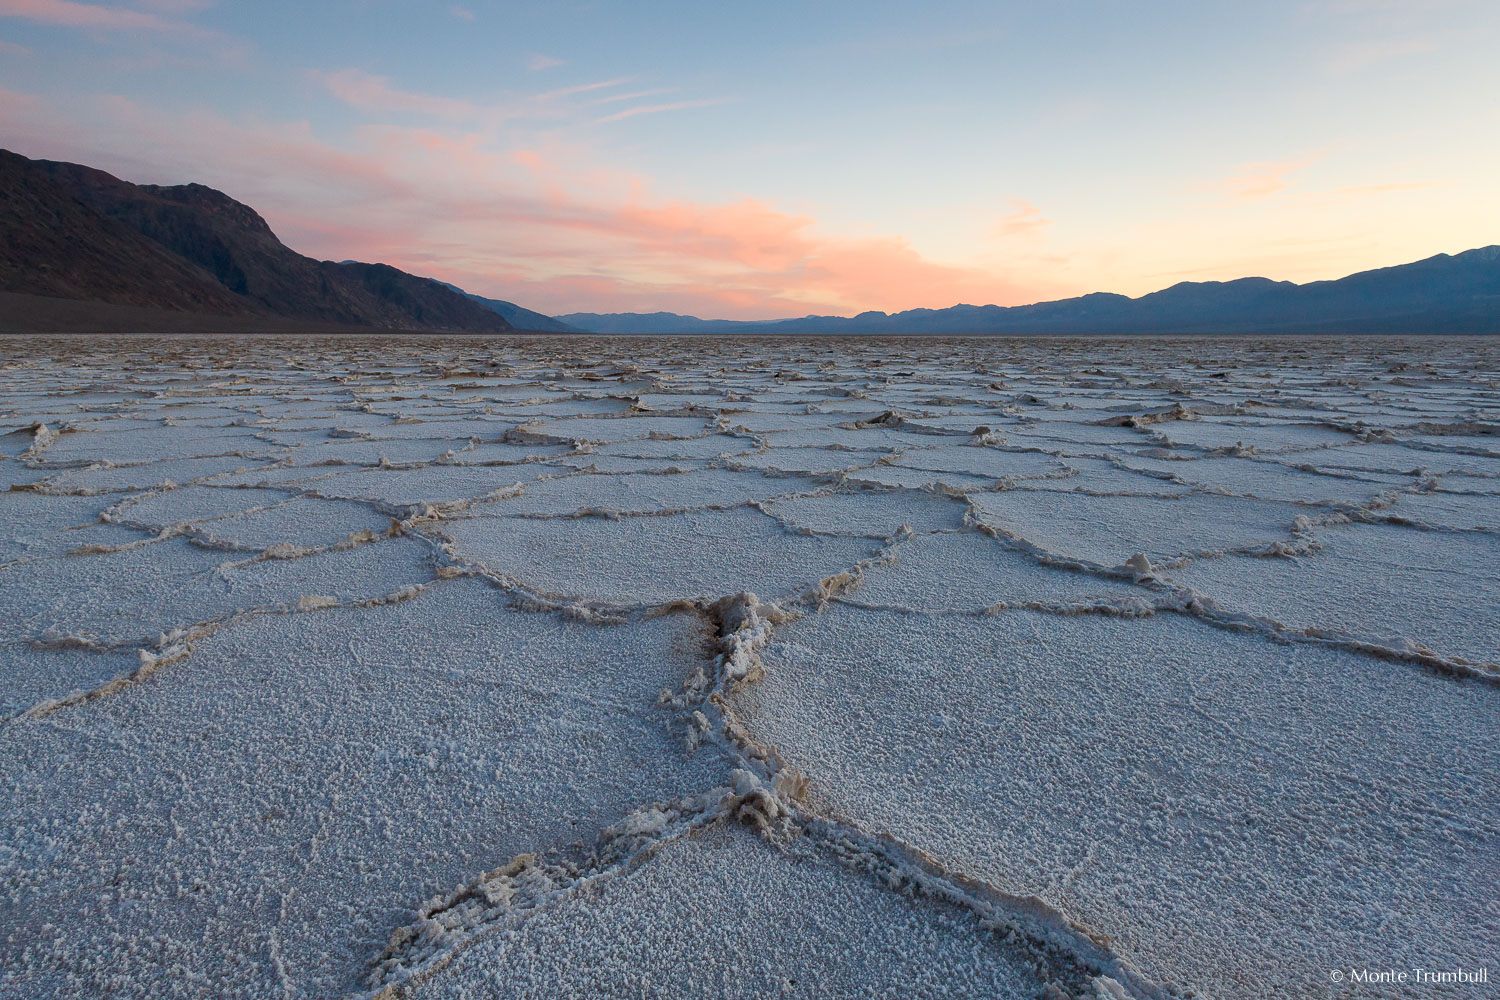 MT-20090303-175104-0035-California-Death-Valley-National-Park-Badwater-salt-flats-sunset.jpg